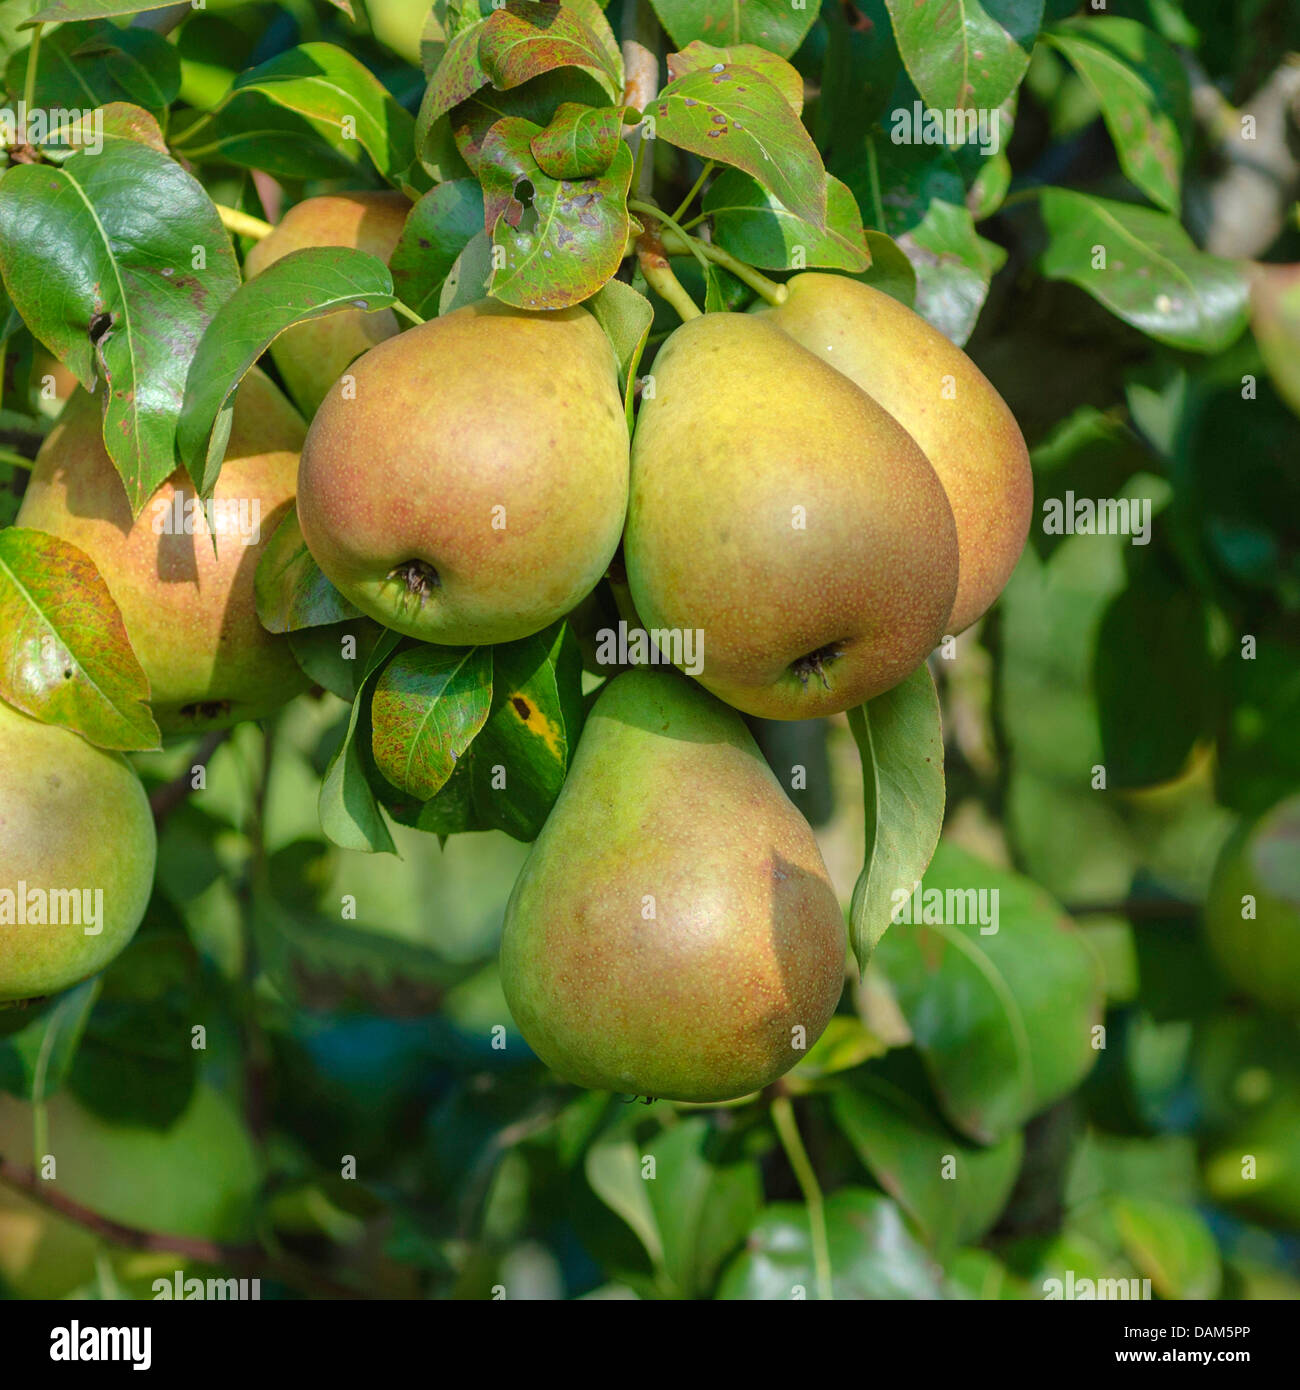 Common pear (Pyrus communis 'Nordhaeuser Winterforelle', Pyrus communis Nordhaeuser Winterforelle), cultivar Nordhaeuser Winterforelle Stock Photo